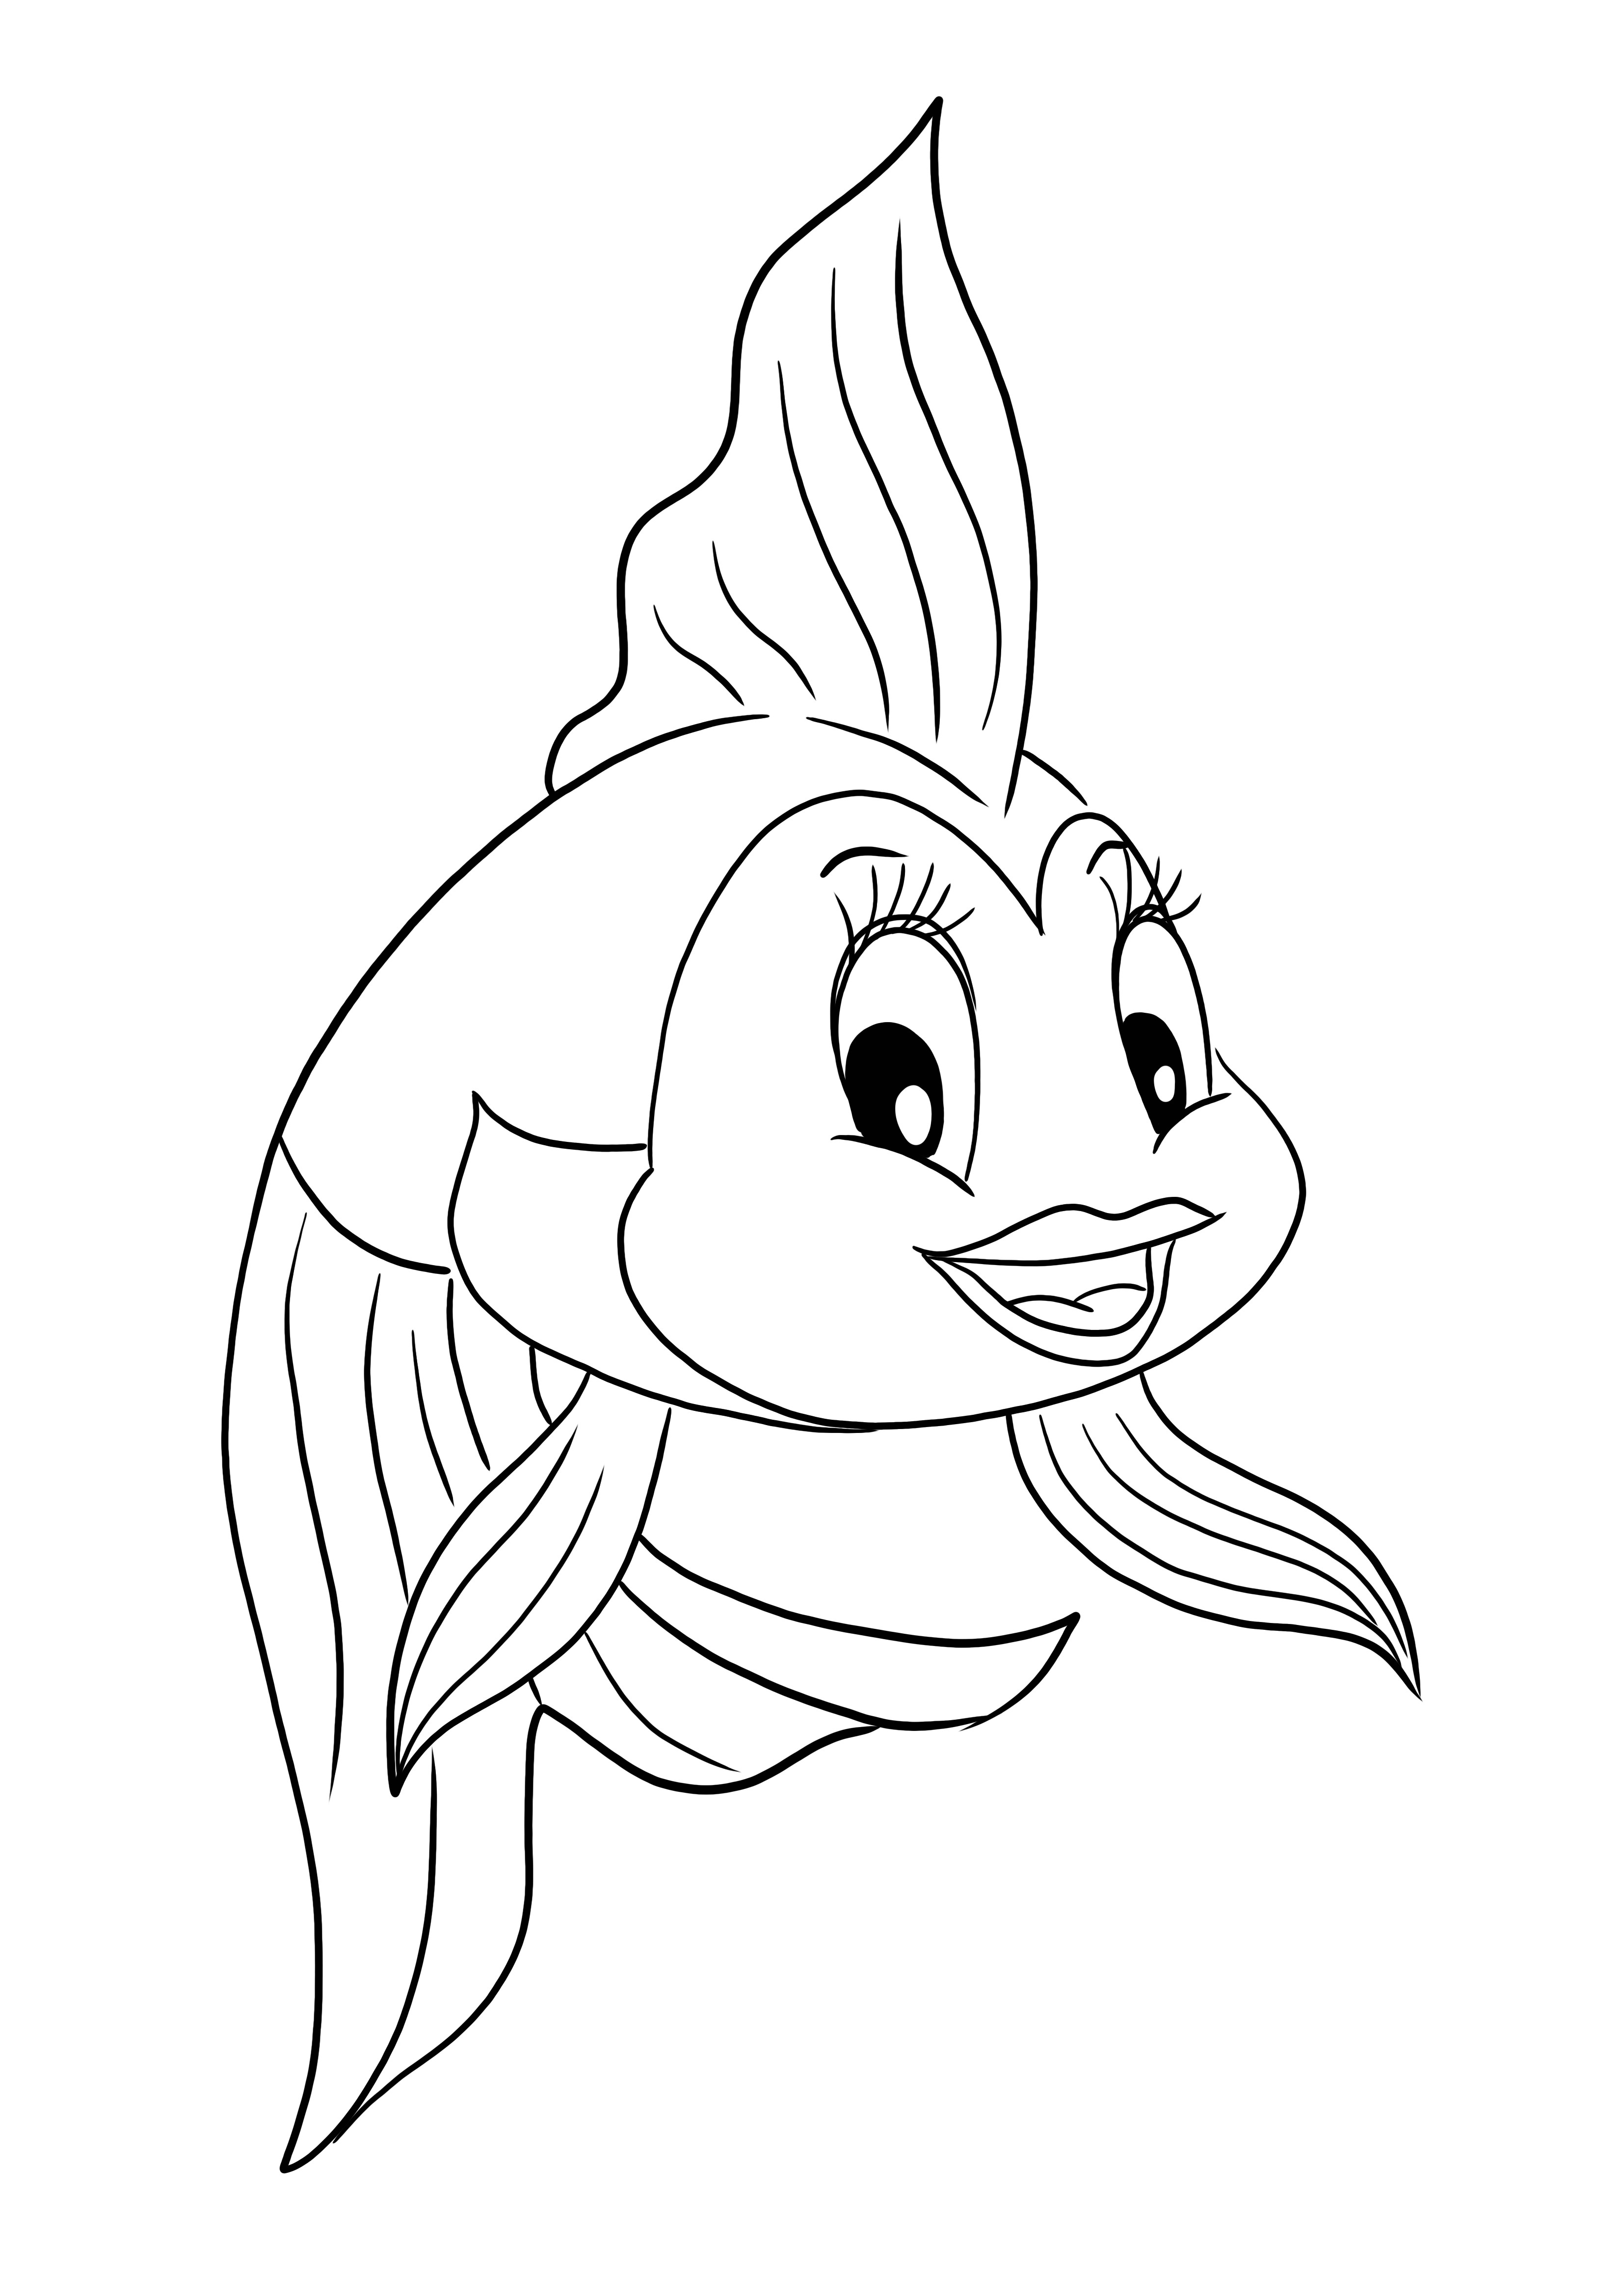 Darmowa strona do pokolorowania i wydrukowania przedstawiająca rybkę Cleo z kreskówki Pinokio dla dzieci